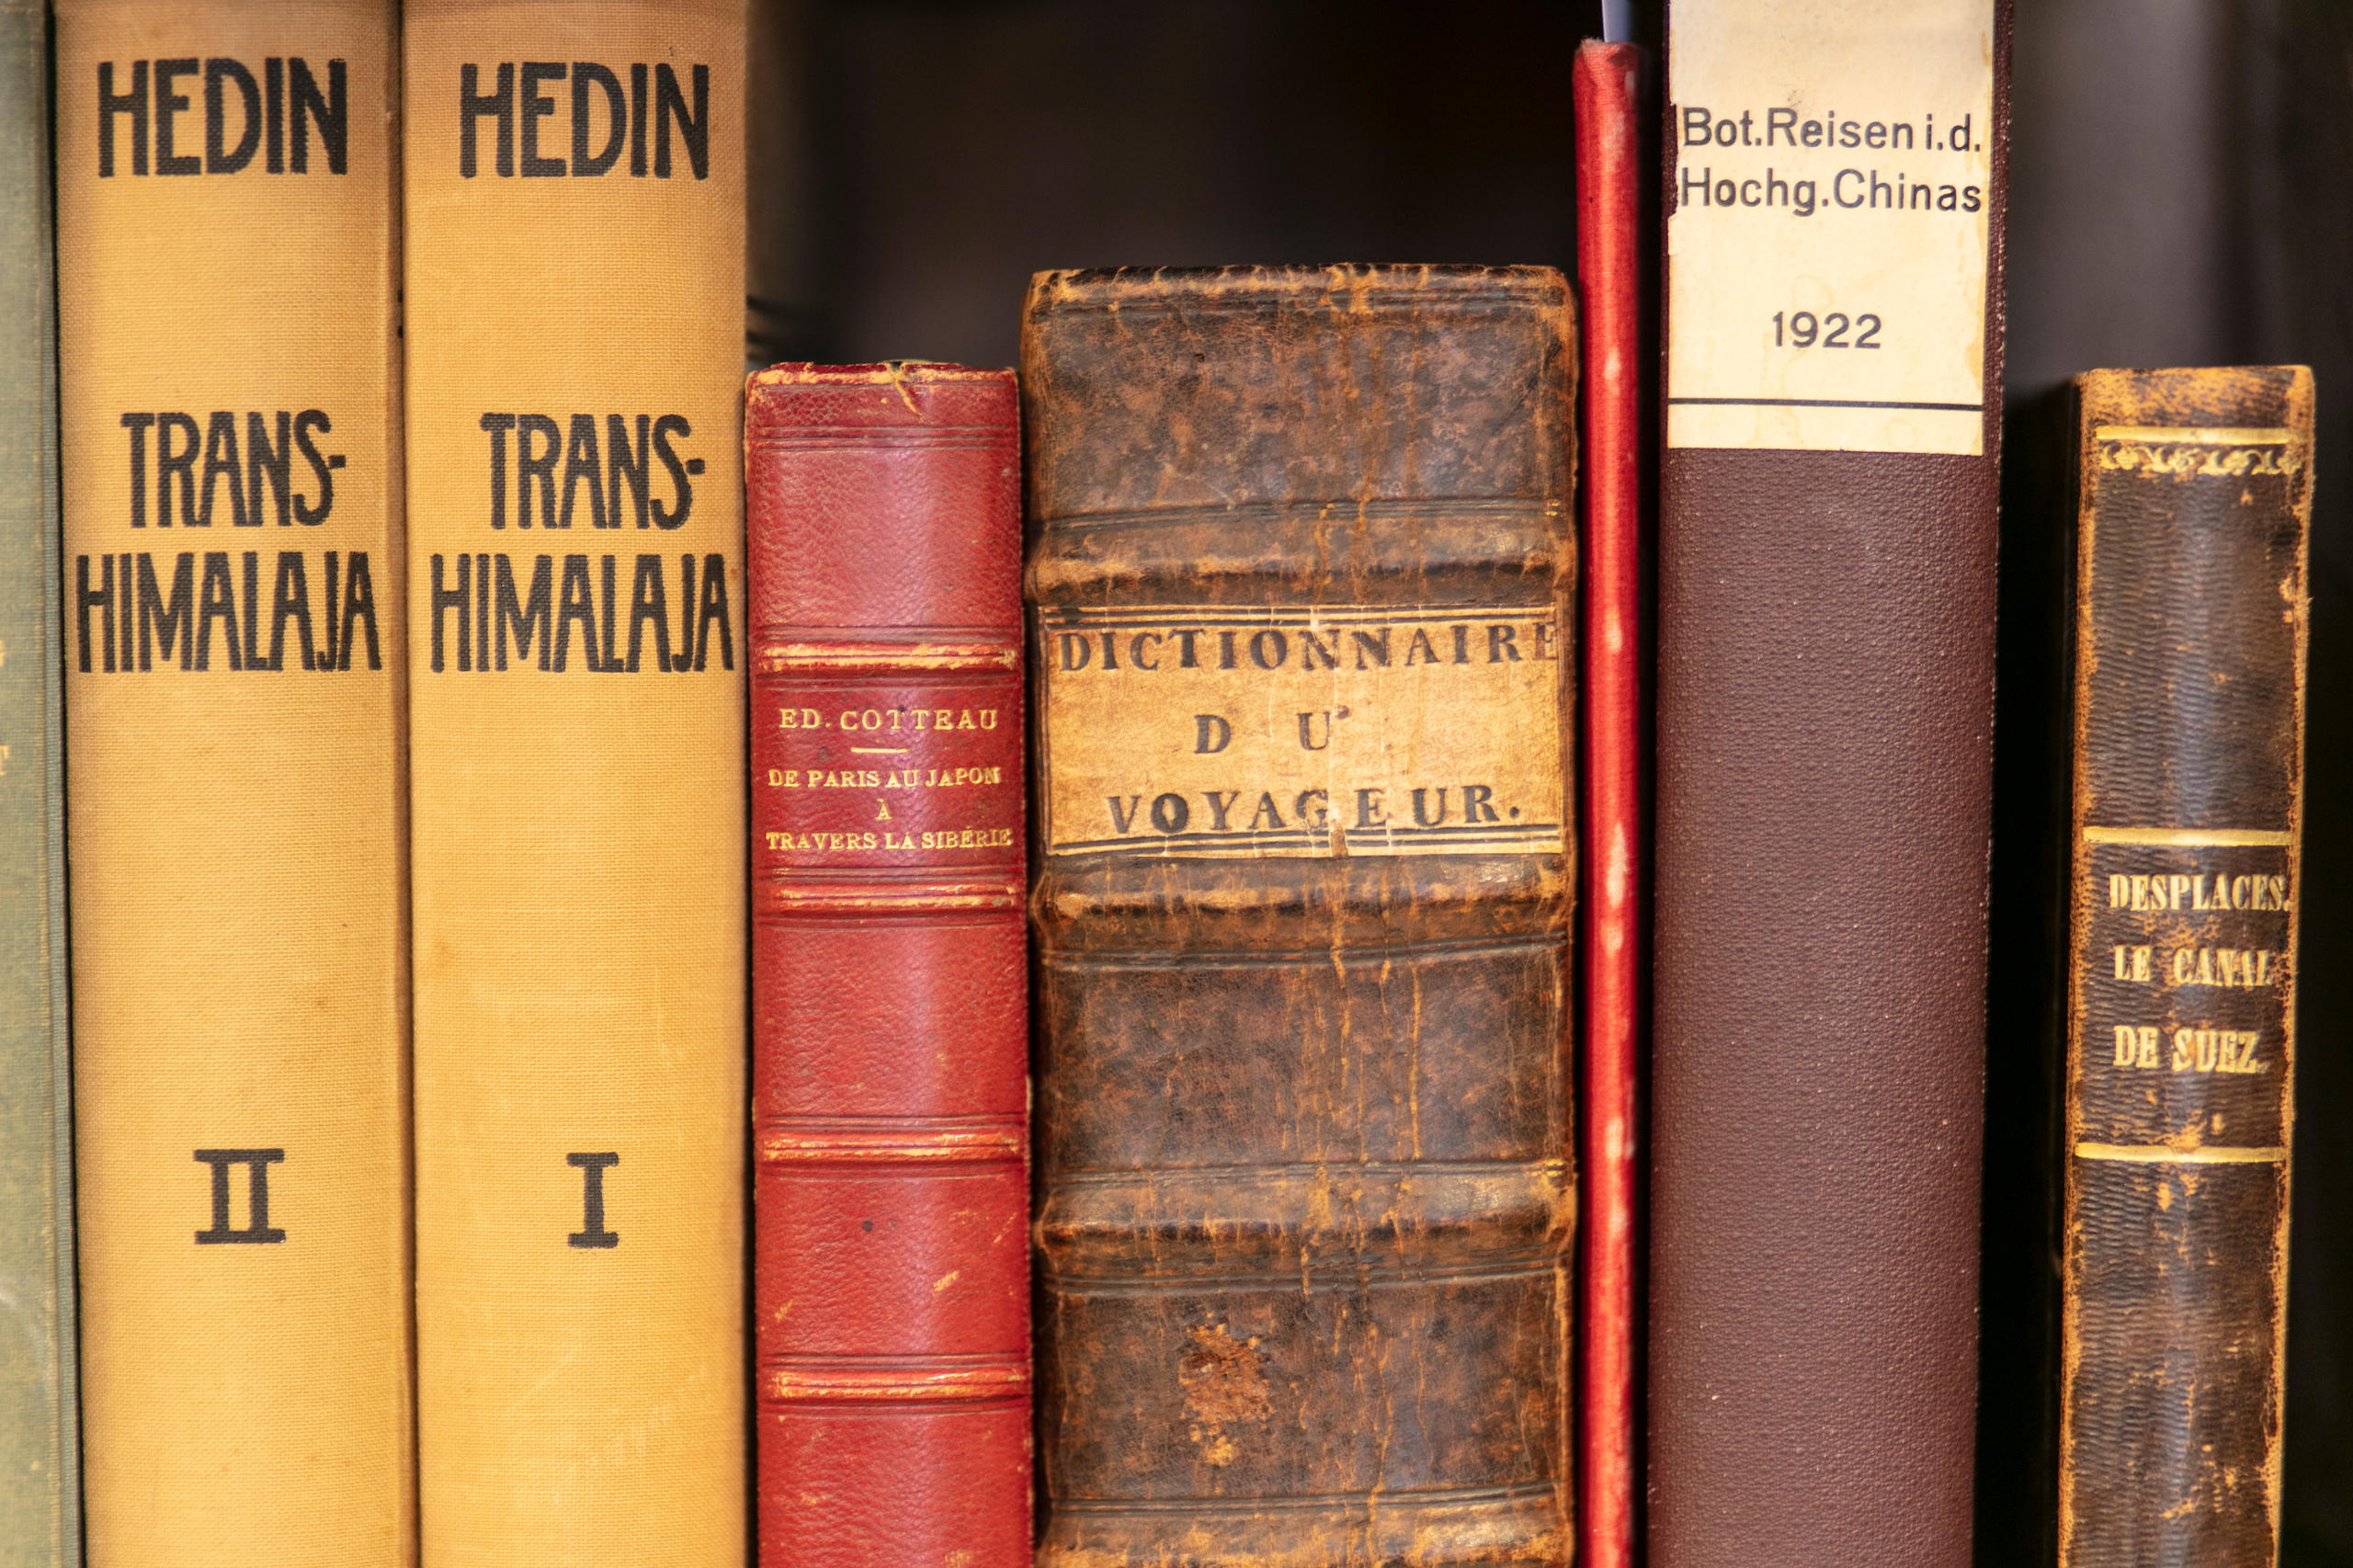 スイスの古書店では古代の旅行記をよく見かける。今も読み応えのある内容だ。ベンツEOS古書籍商の売れ筋は美術書だという